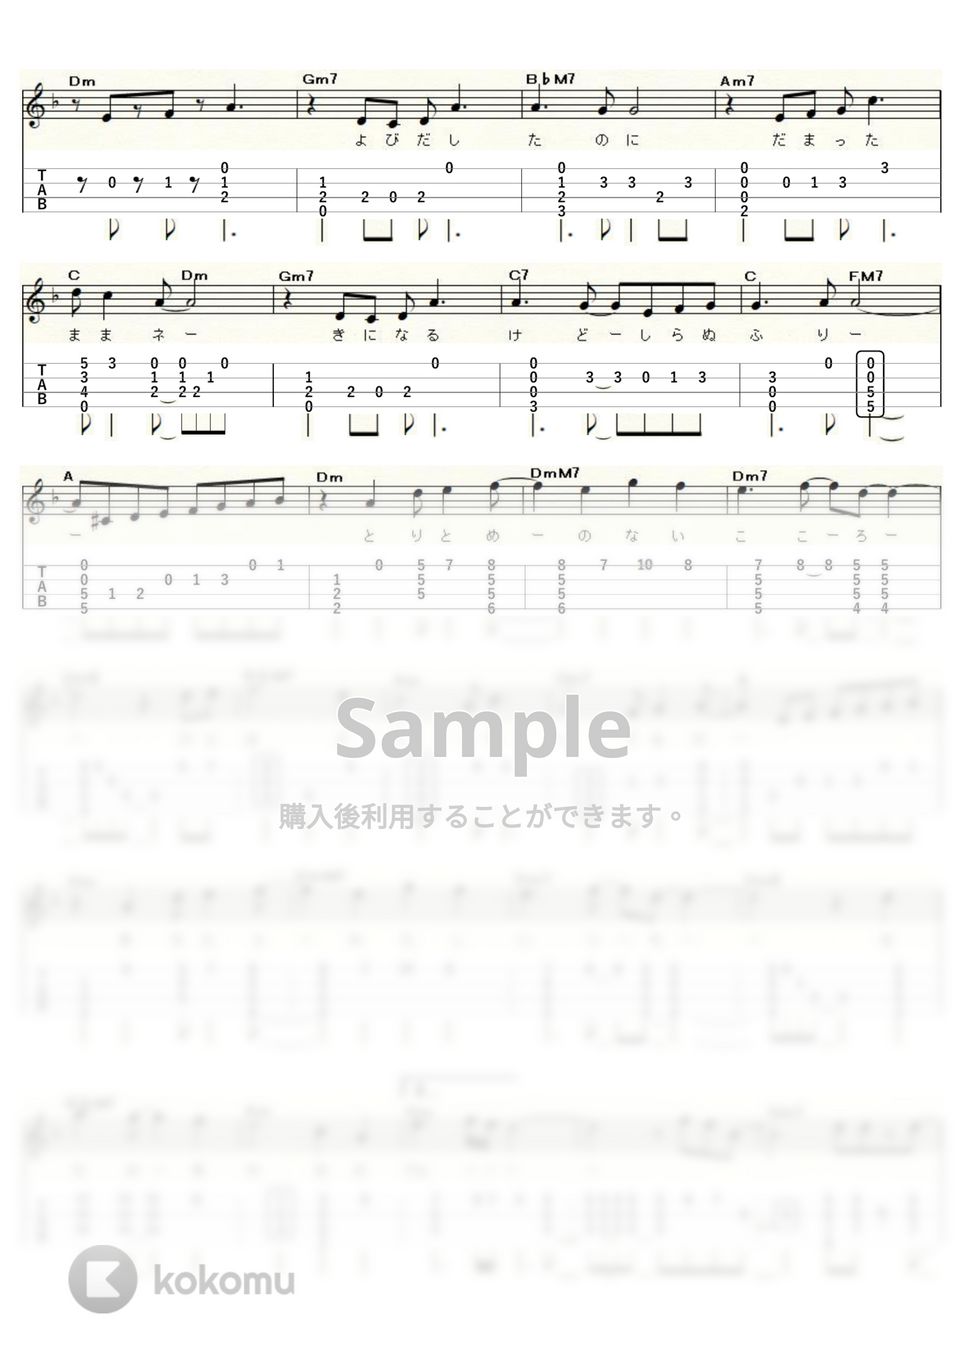 渡辺真知子 - ブルー (ｳｸﾚﾚｿﾛ / High-G・Low-G / 中級～上級) by ukulelepapa